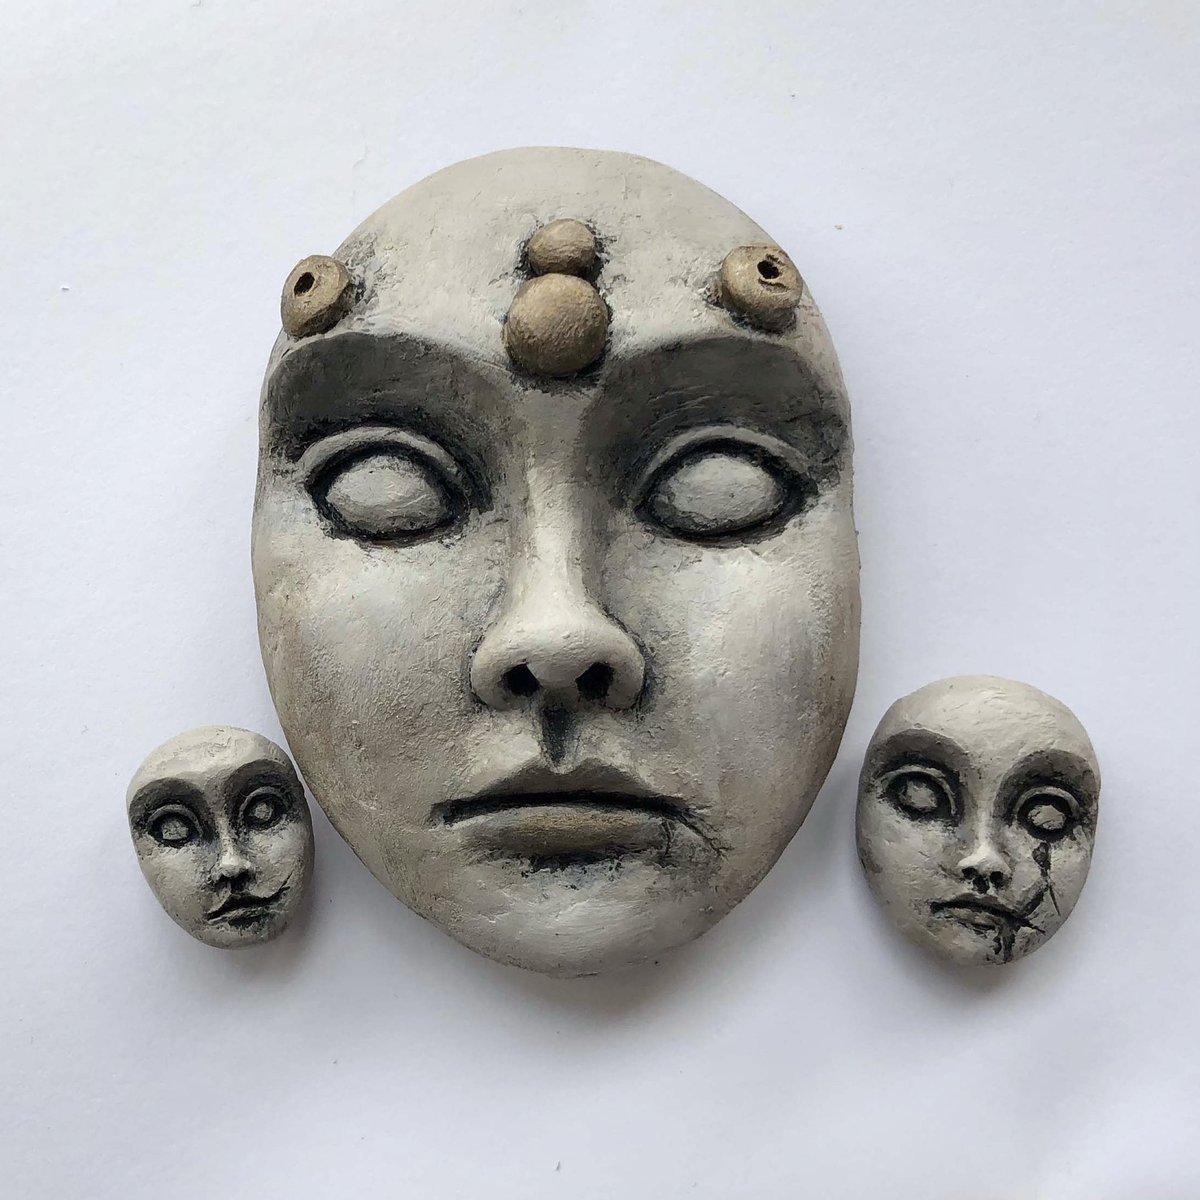 3 different hand-sculpted faces. 

.. 

#polymerclayart #handsculpted #workinprogress #facesculpture #dollheads #dollfaces #spiritdolls #stoicfaces